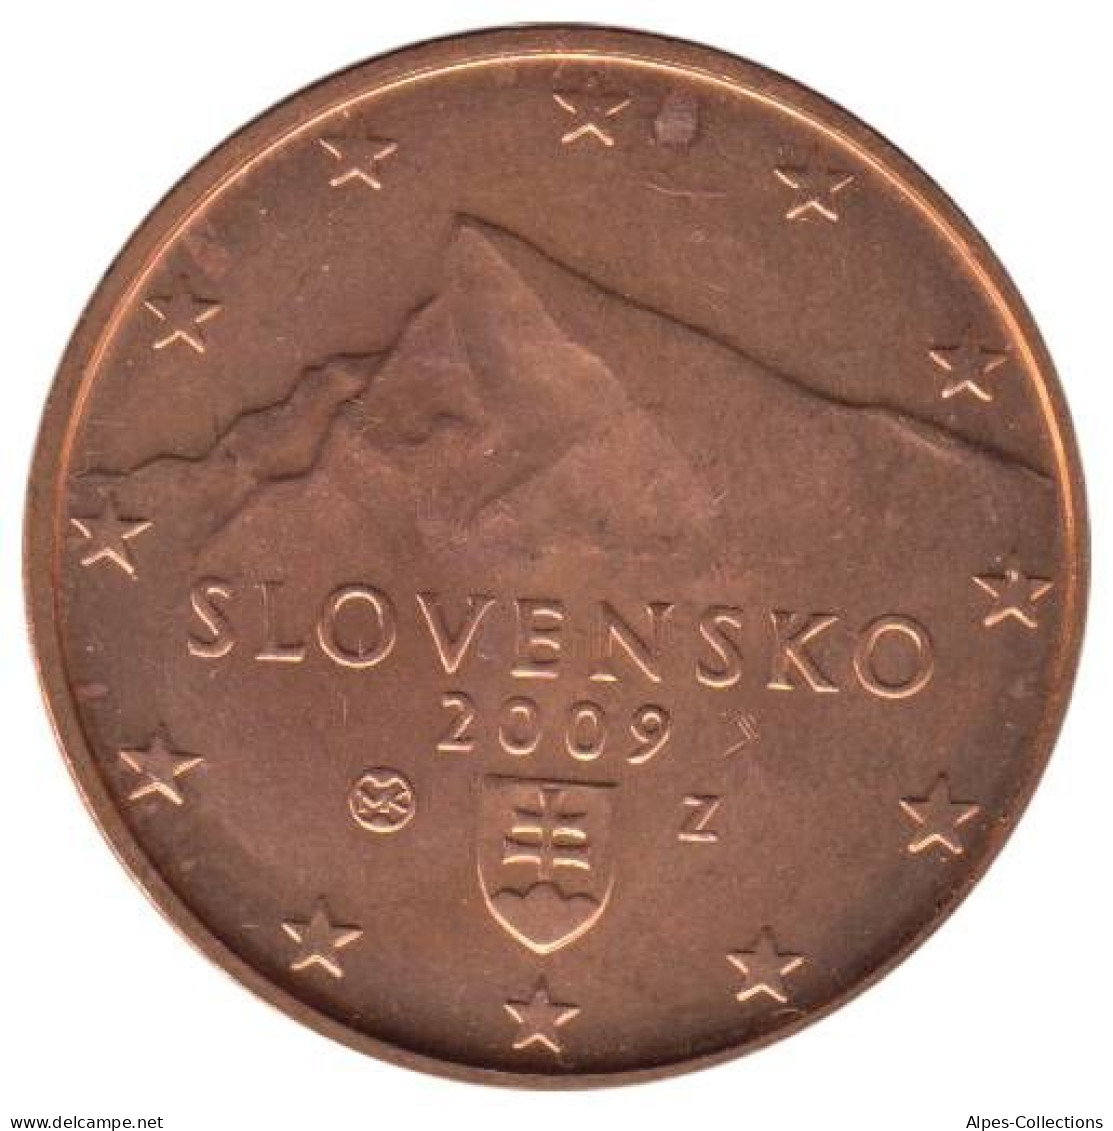 SQ00509.1 - SLOVAQUIE - 5 Cents - 2009 - Slowakije